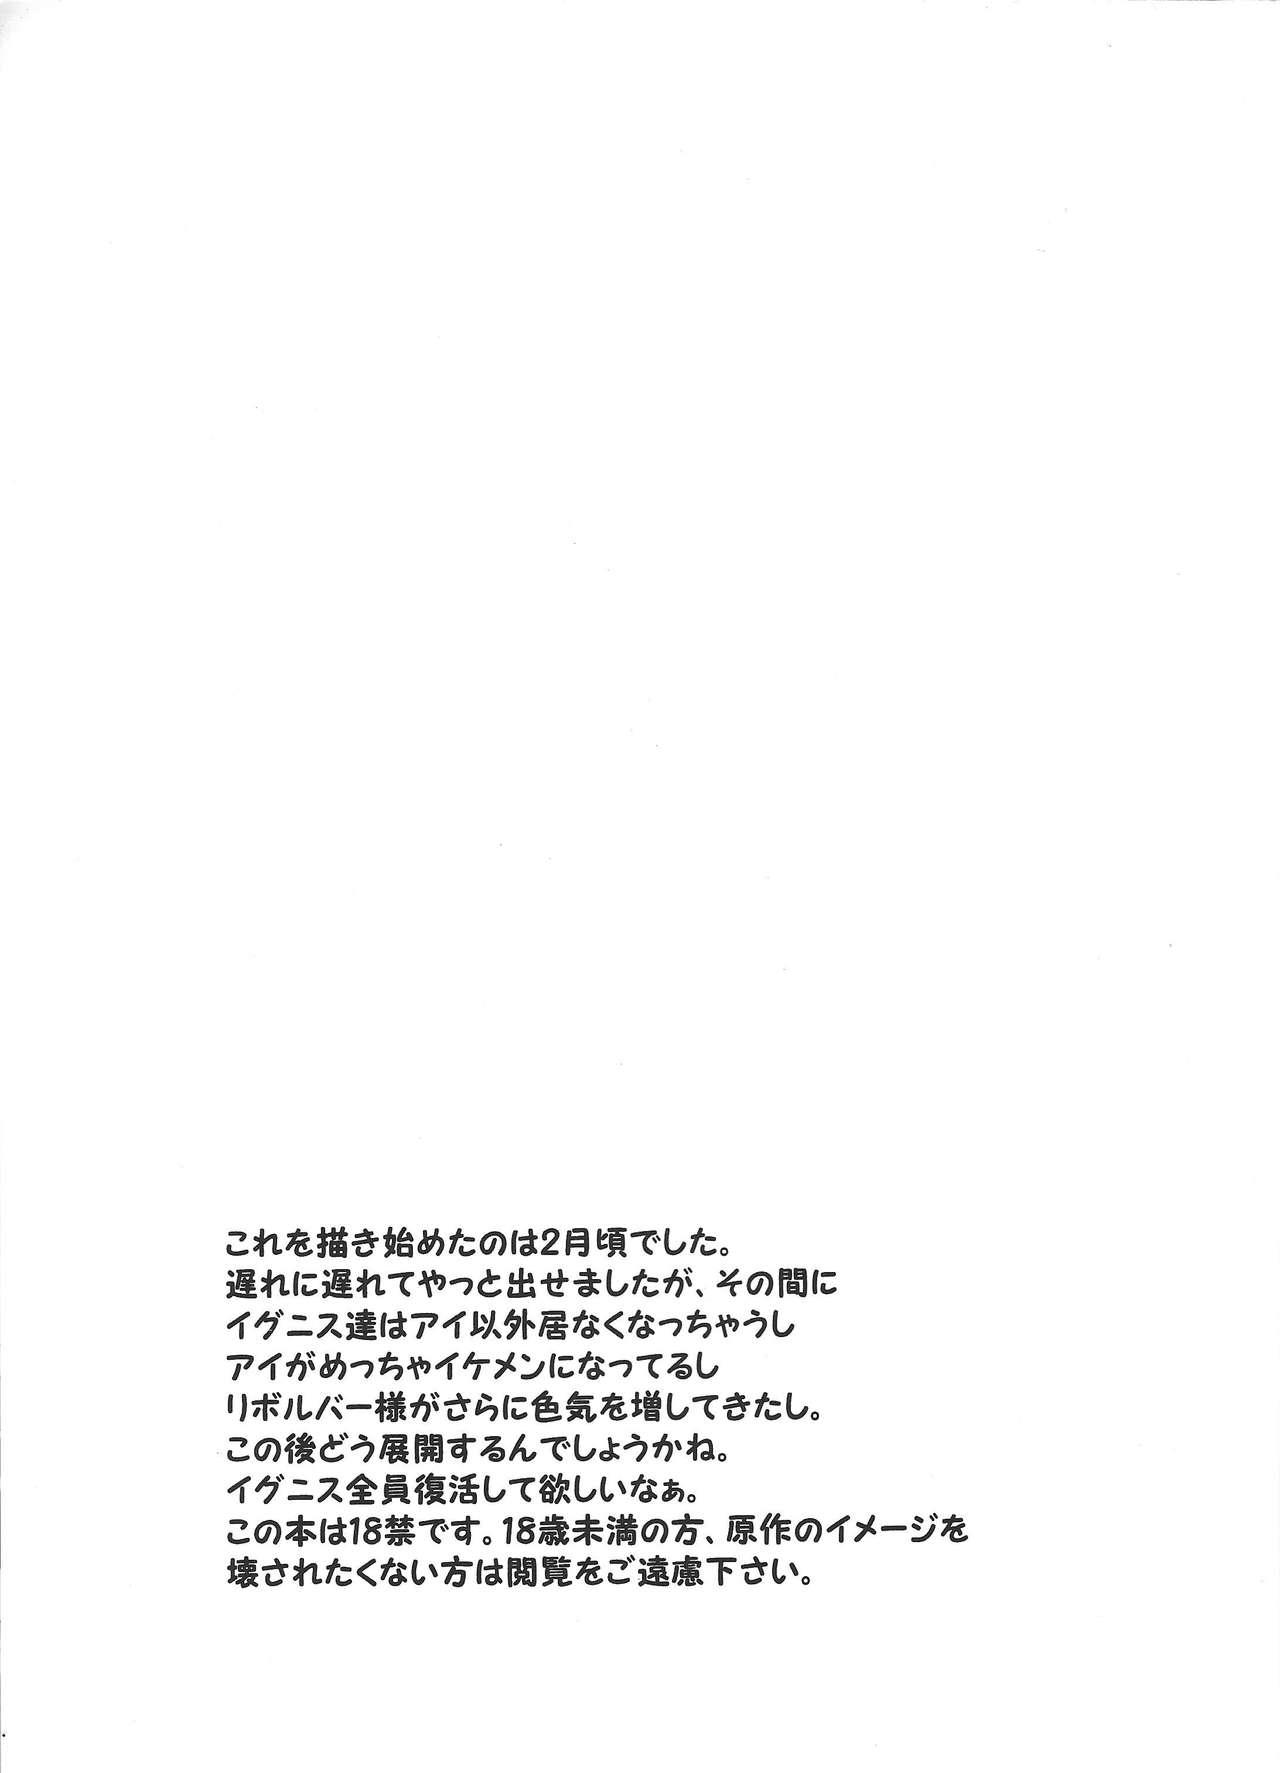 Gordibuena Otsukiai Hajimemashita - Yu-gi-oh vrains Gay Uniform - Page 2